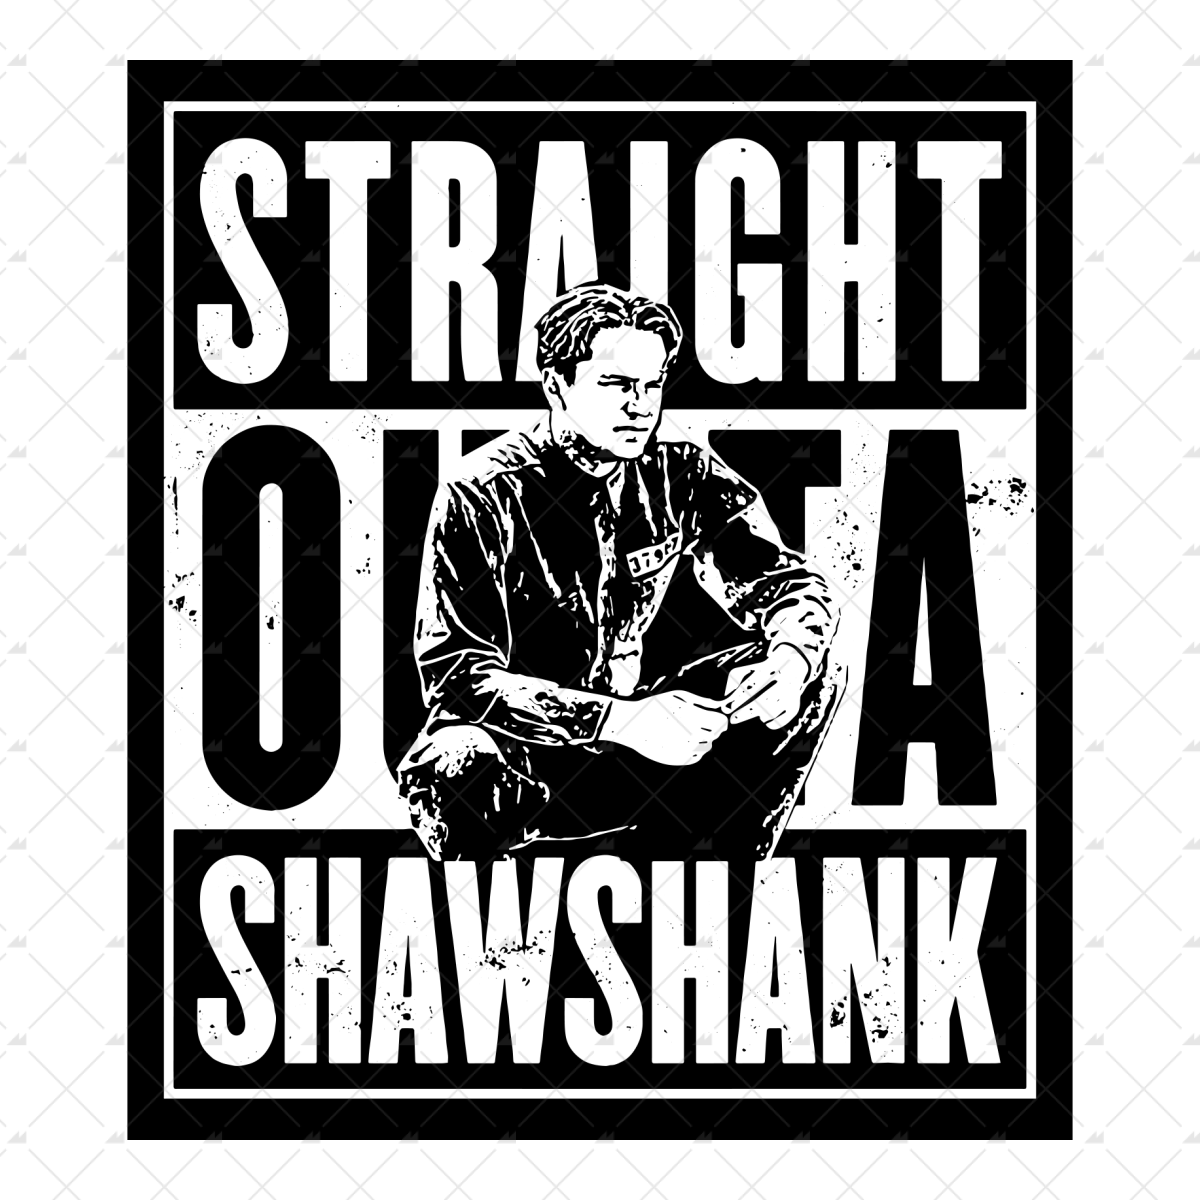 Straight Outta Shawshank - Sticker